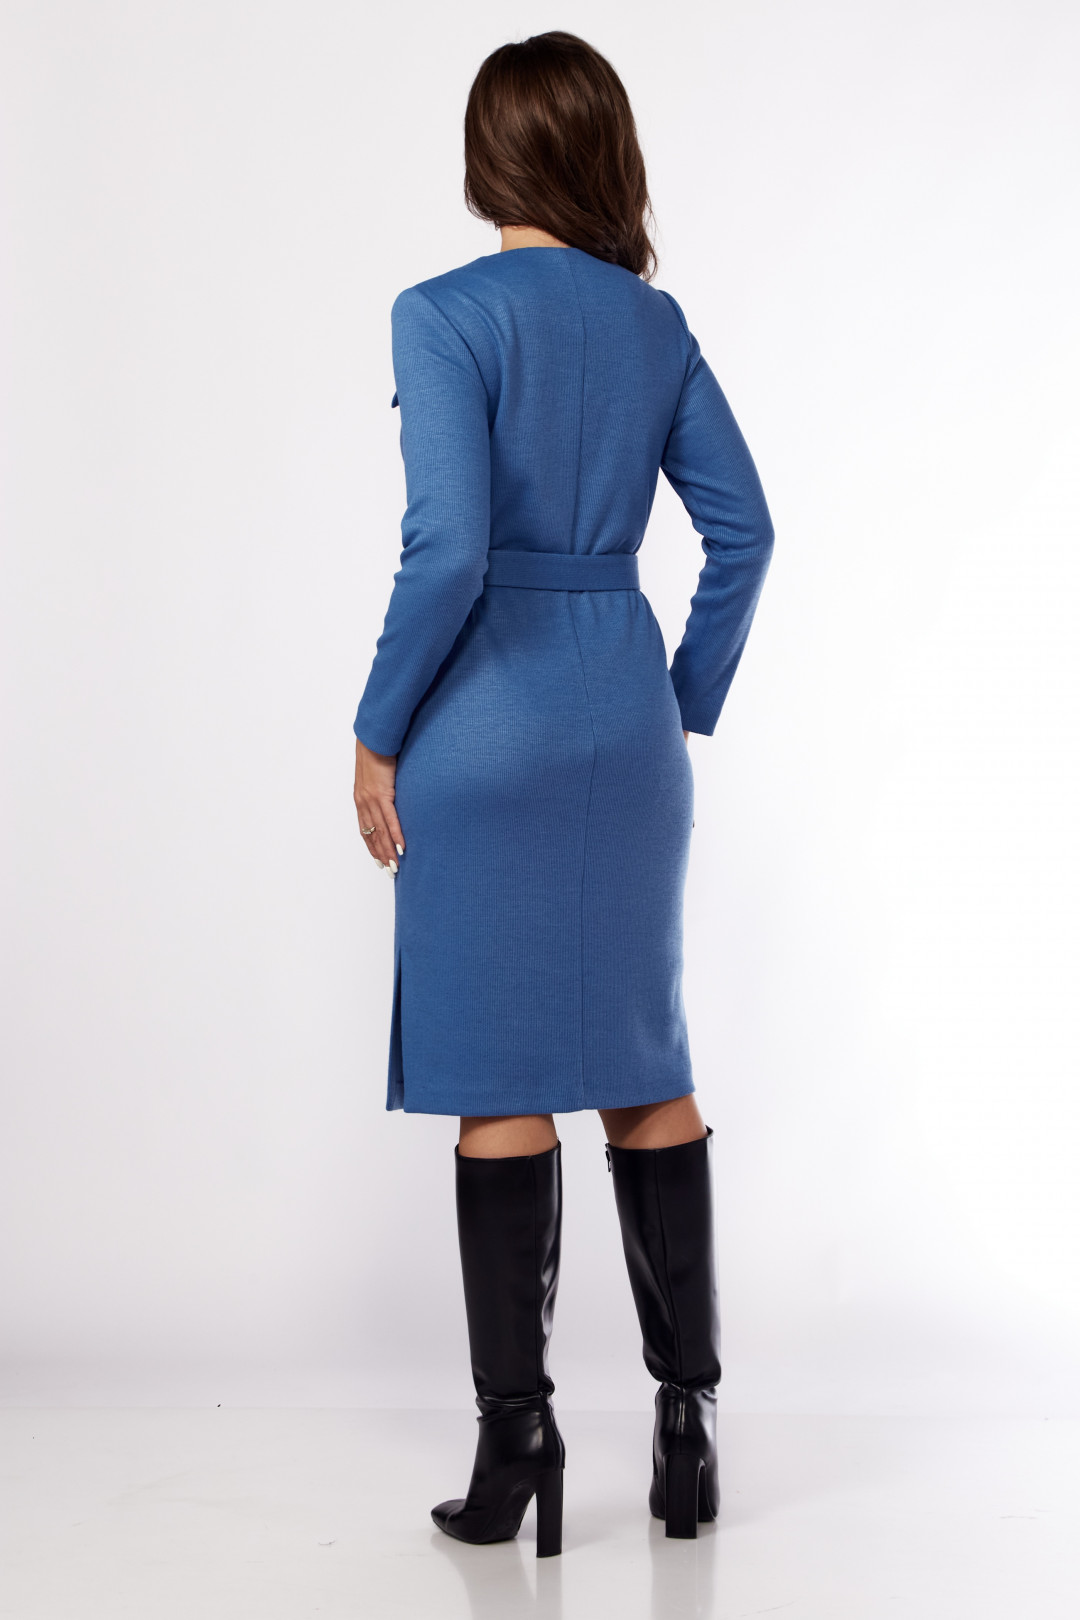 Платье Карина Делюкс М-1160 синий